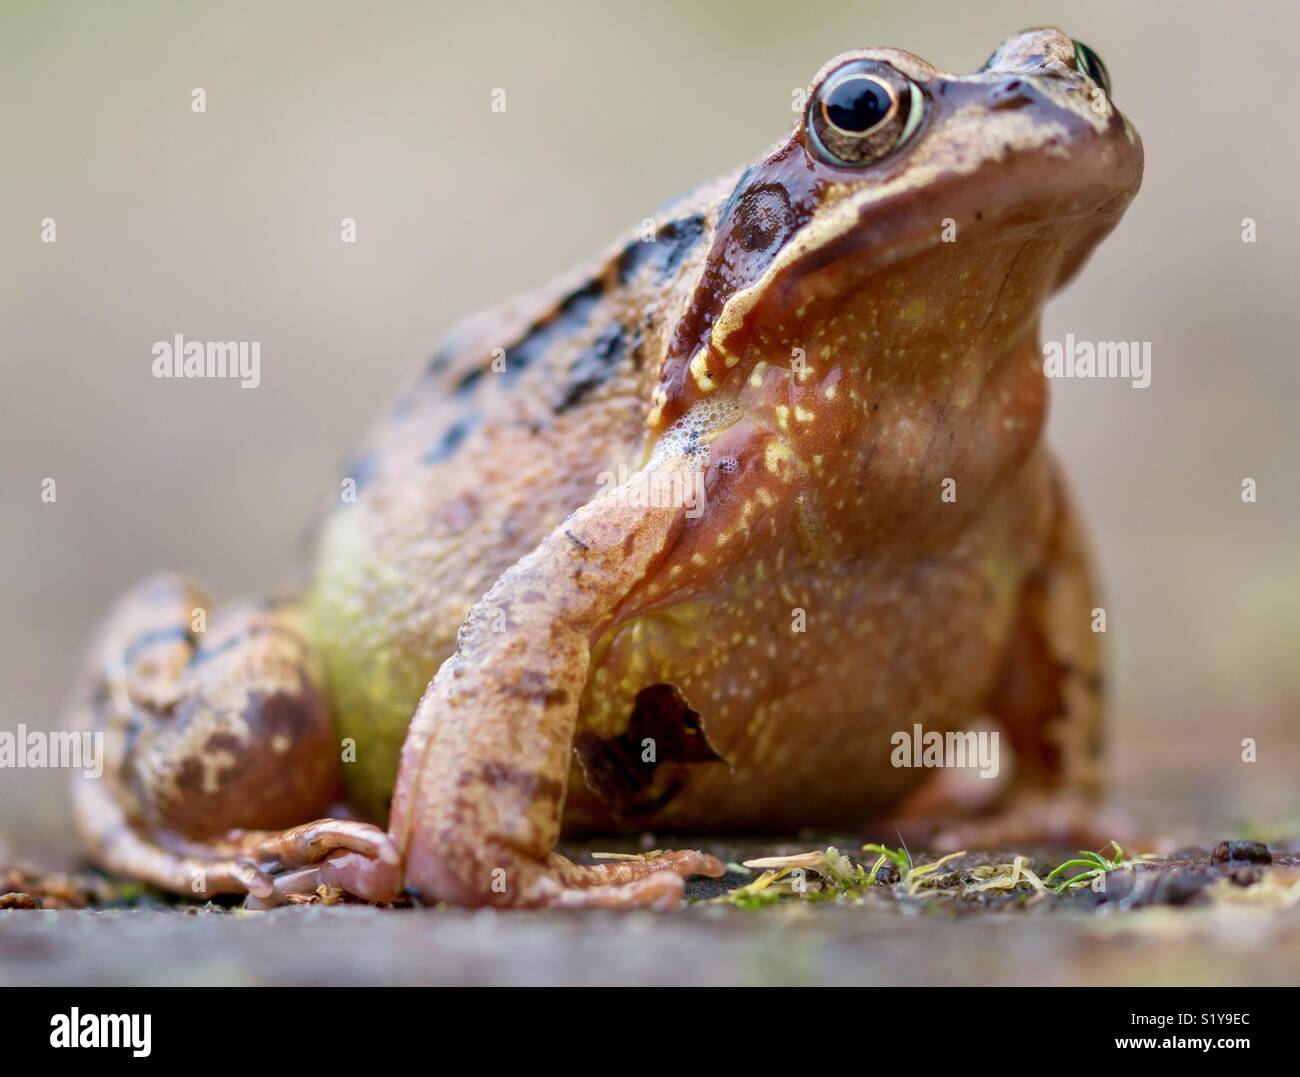 FROSCH NAHAUFNAHME IM WASSER große helle Froschaugen Makro Nahaufnahme  Stockfotografie - Alamy